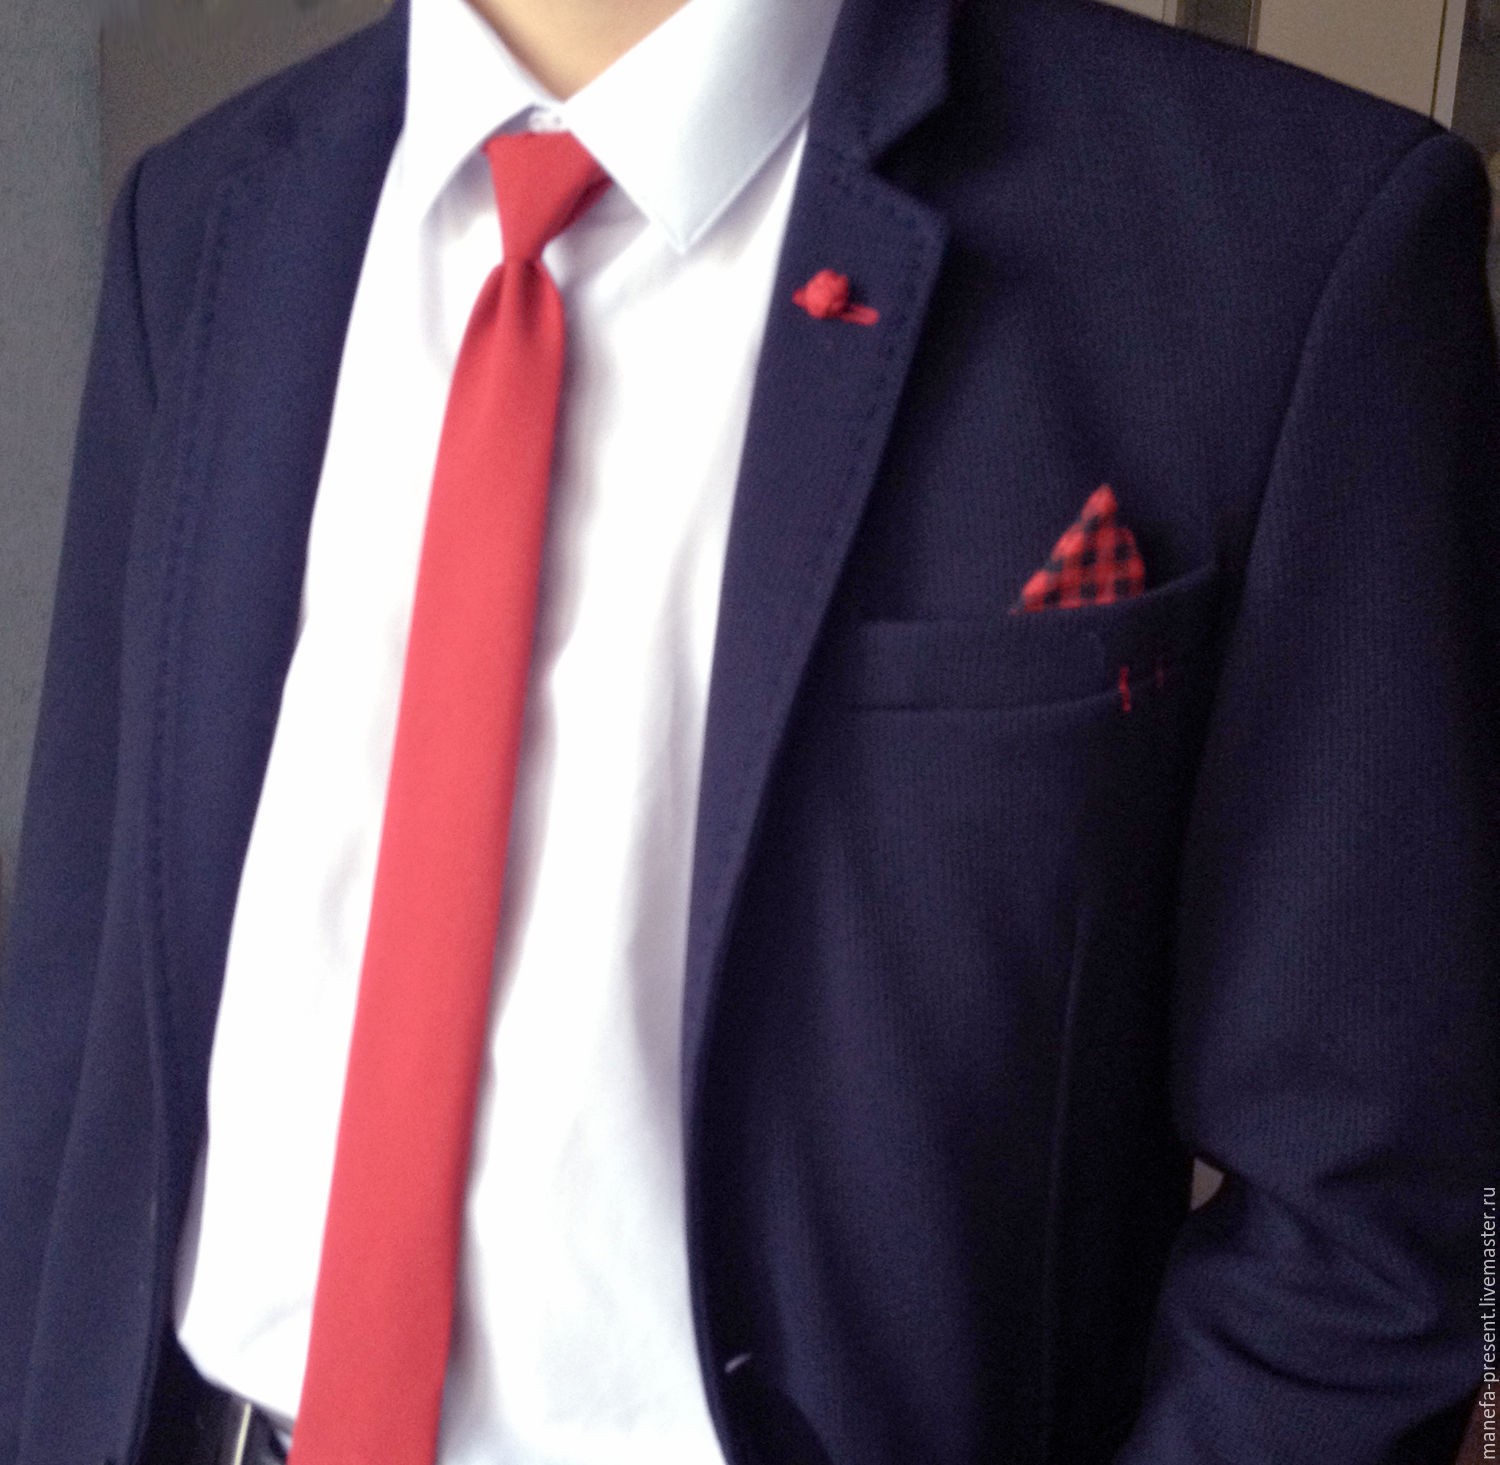 Синяя рубашка и красный галстук